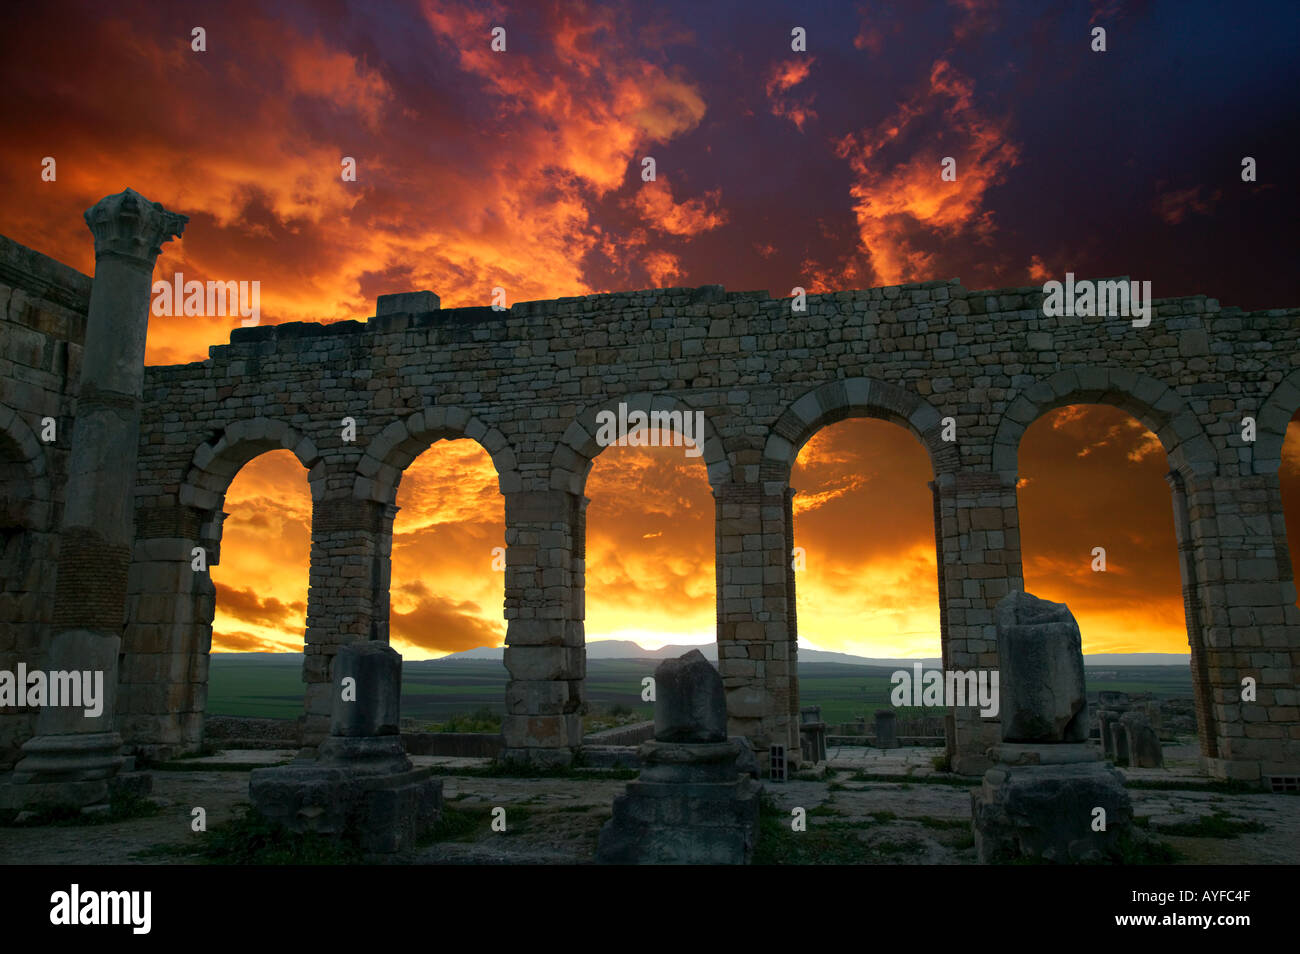 Volubilis Roman Ruinen stammt aus der 2. und 3. Jahrhundert AD Sonnenuntergang Silhouetten der geschwungenen Torbögen des Basilika-Marokko Stockfoto